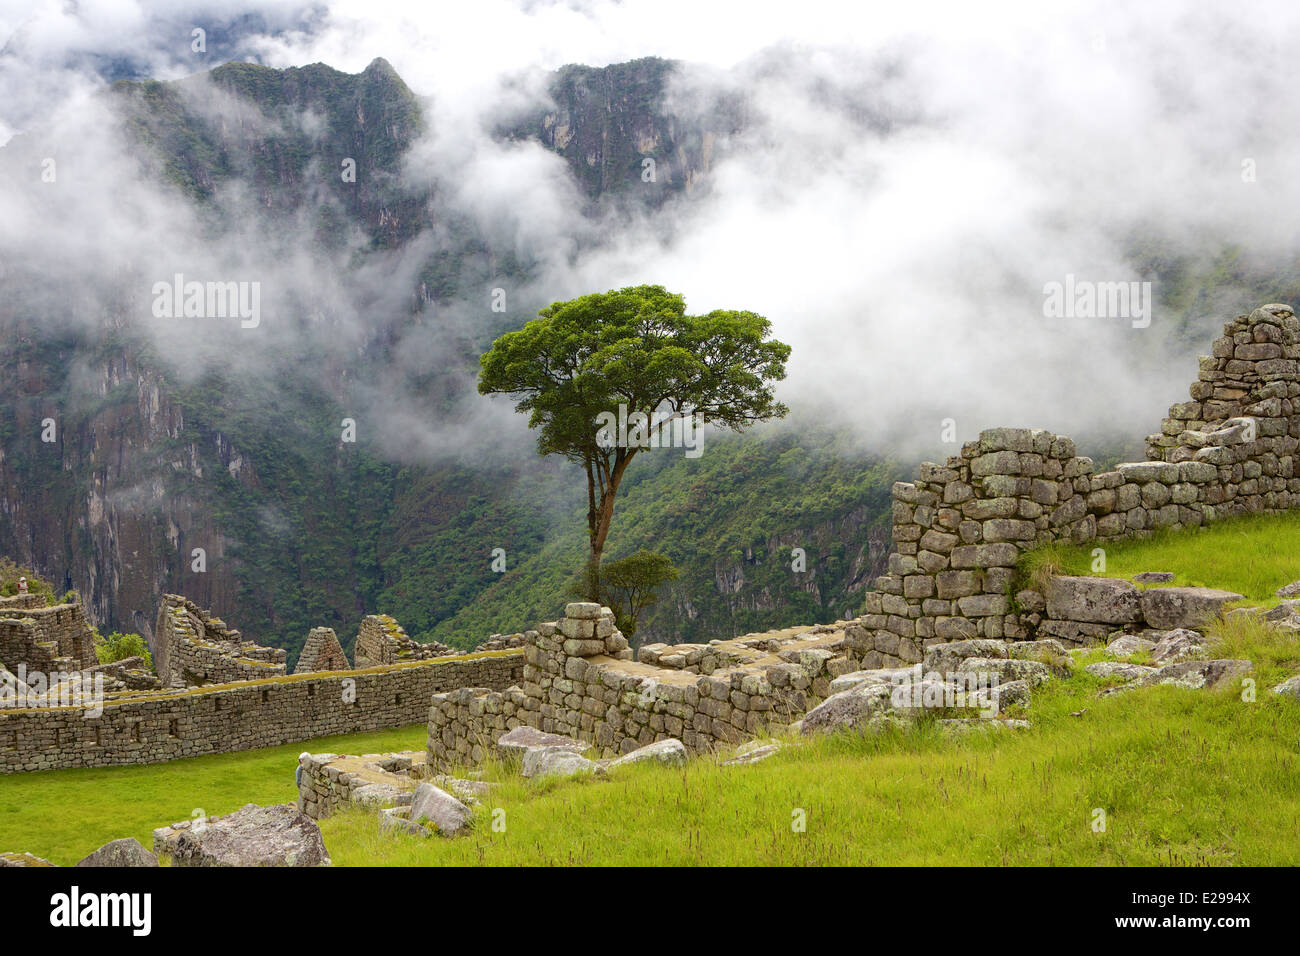 Belle et mystérieuse Machu Picchu, la ville perdue des Incas, dans les Andes péruviennes, au lever du soleil. Banque D'Images